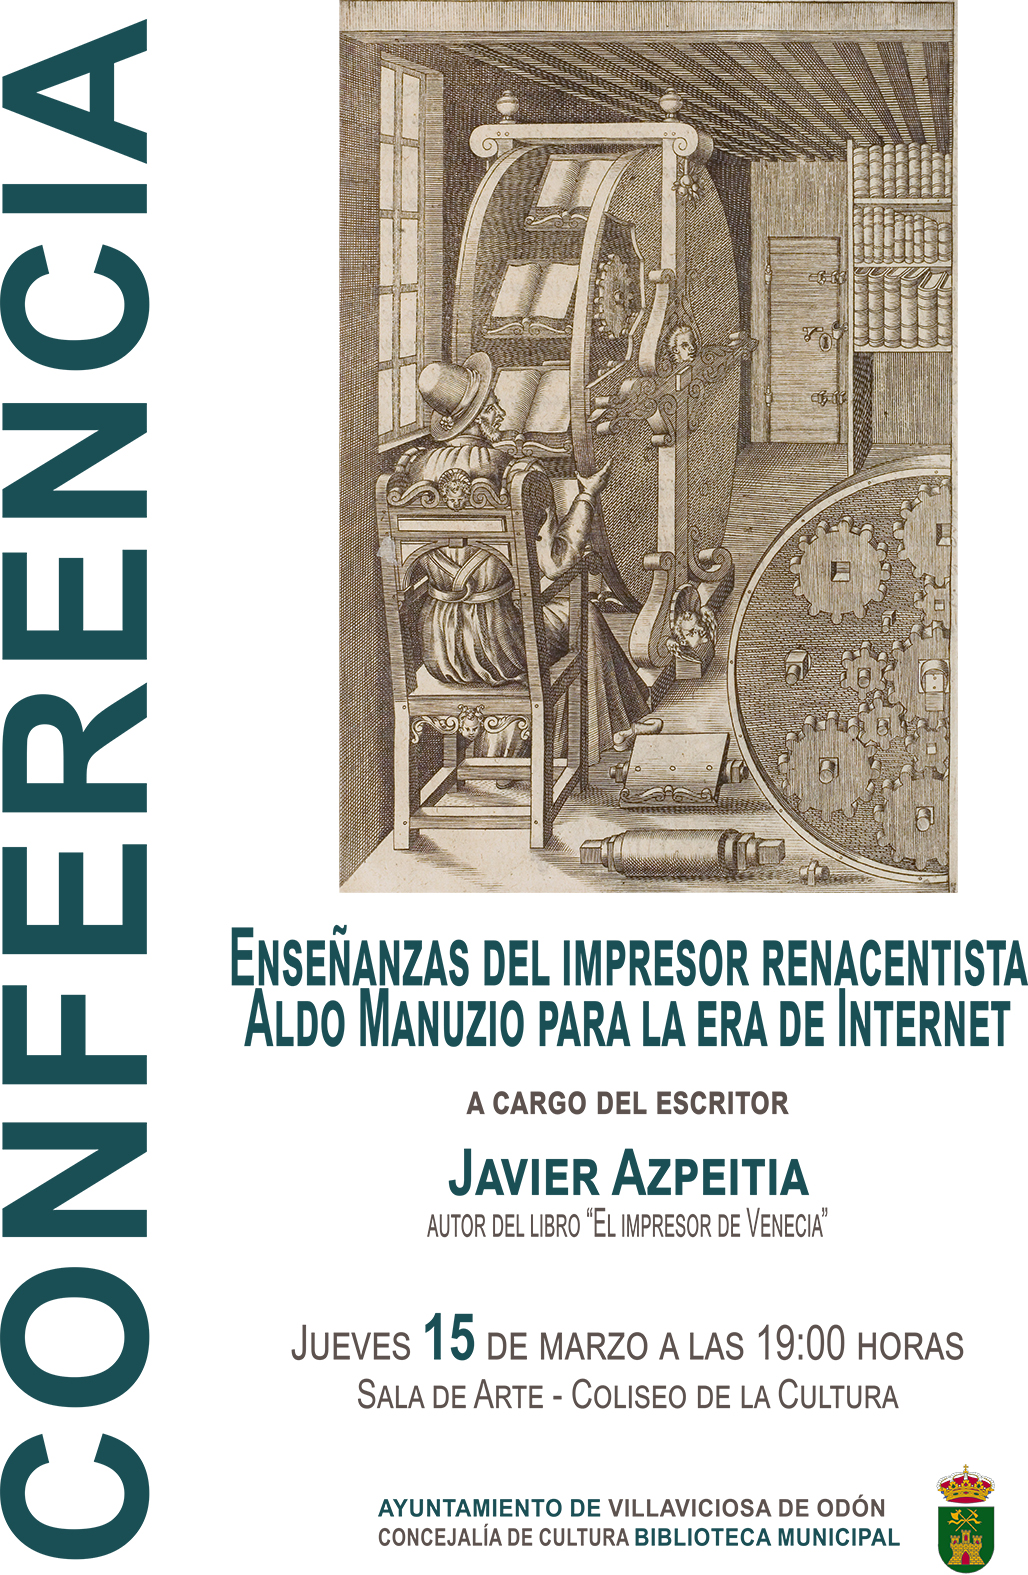 Conferencia Javier Azpeitia